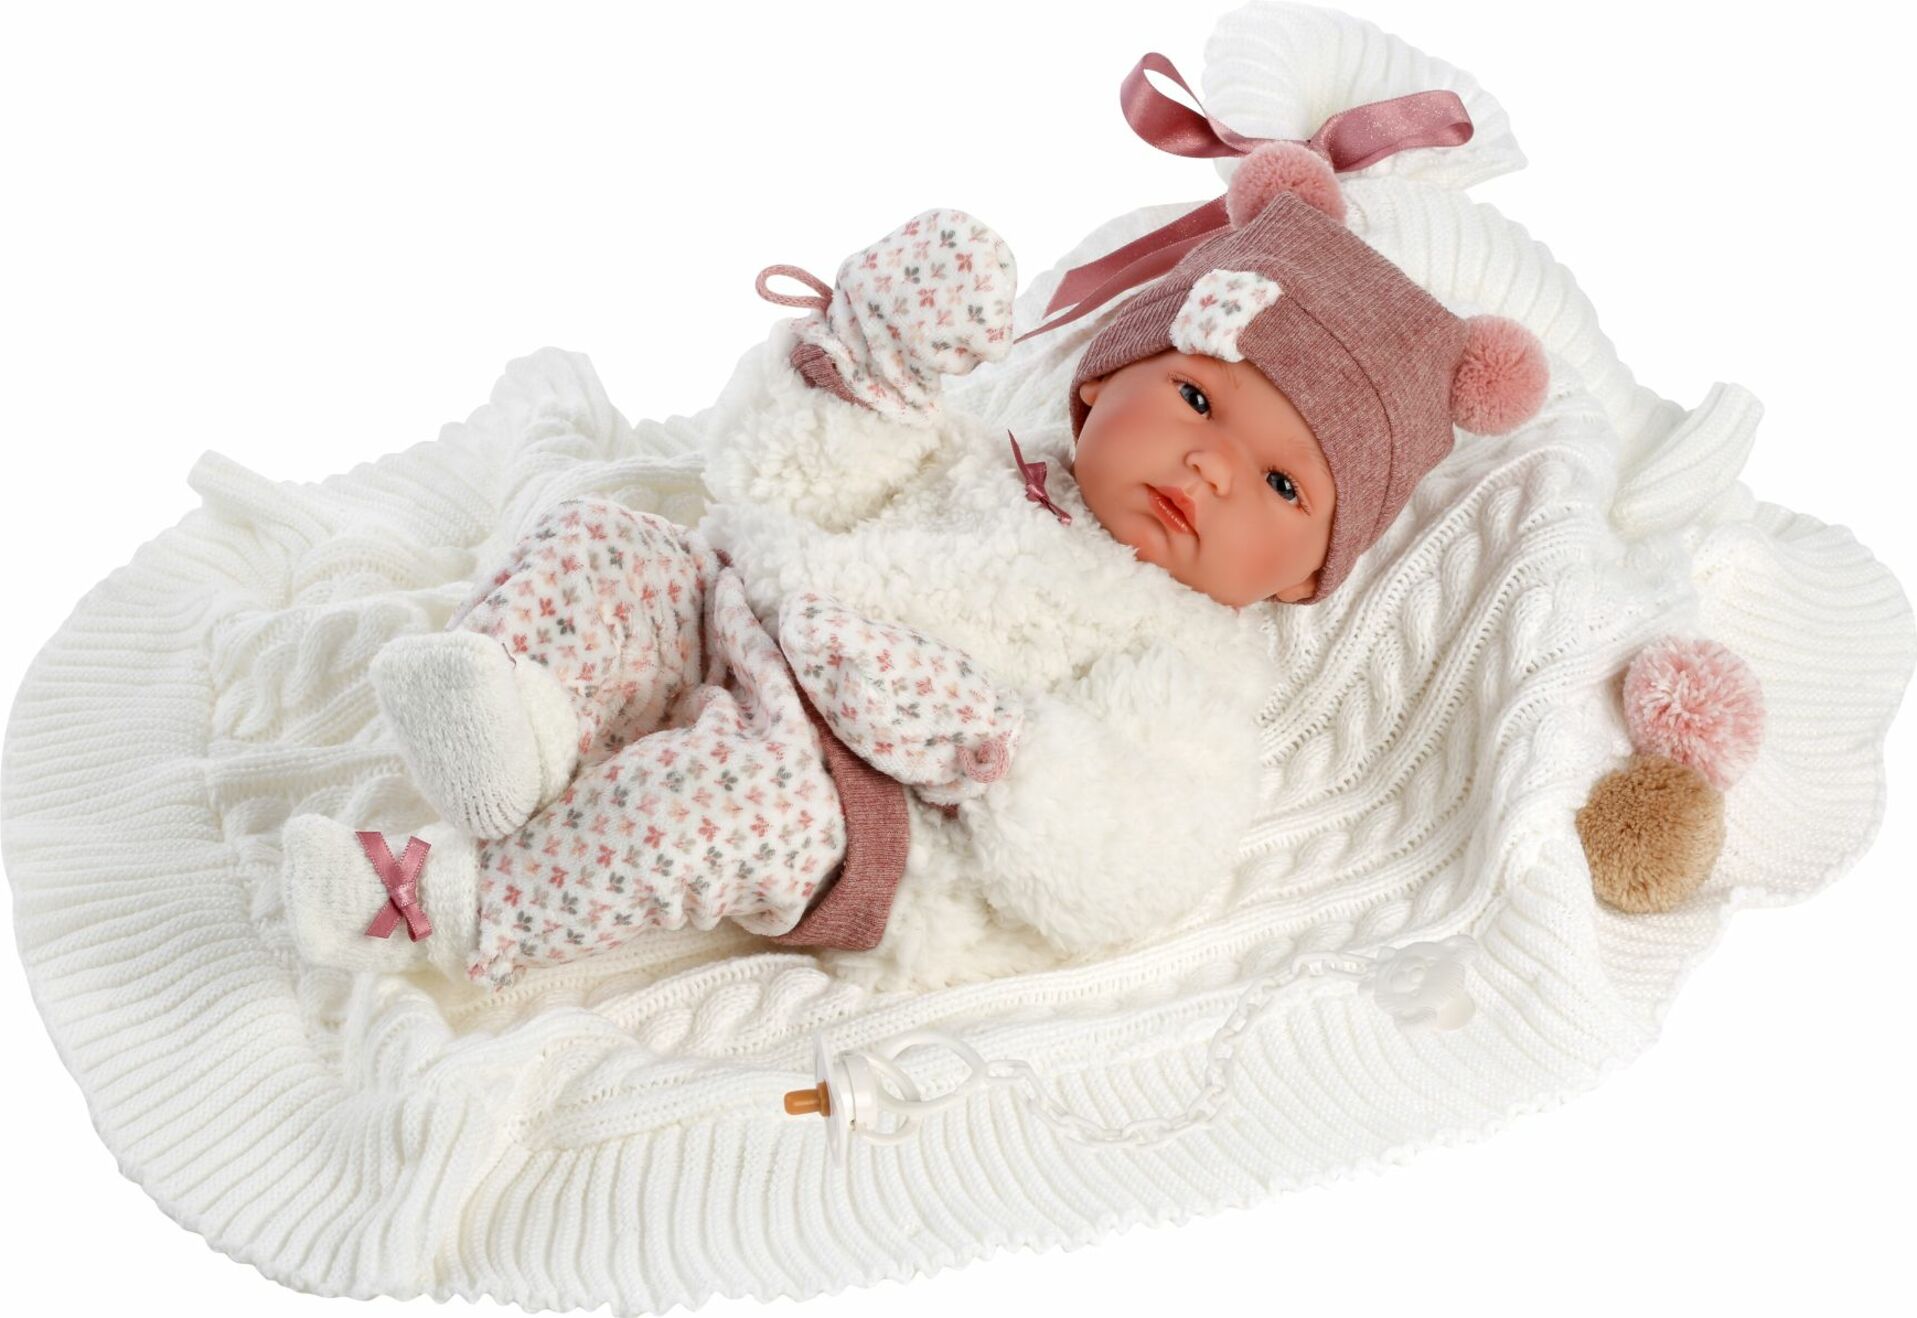 Llorens 63576 NEW BORN DĚVČÁTKO-realistická panenka miminko s celovinylovým tělem- 35 c